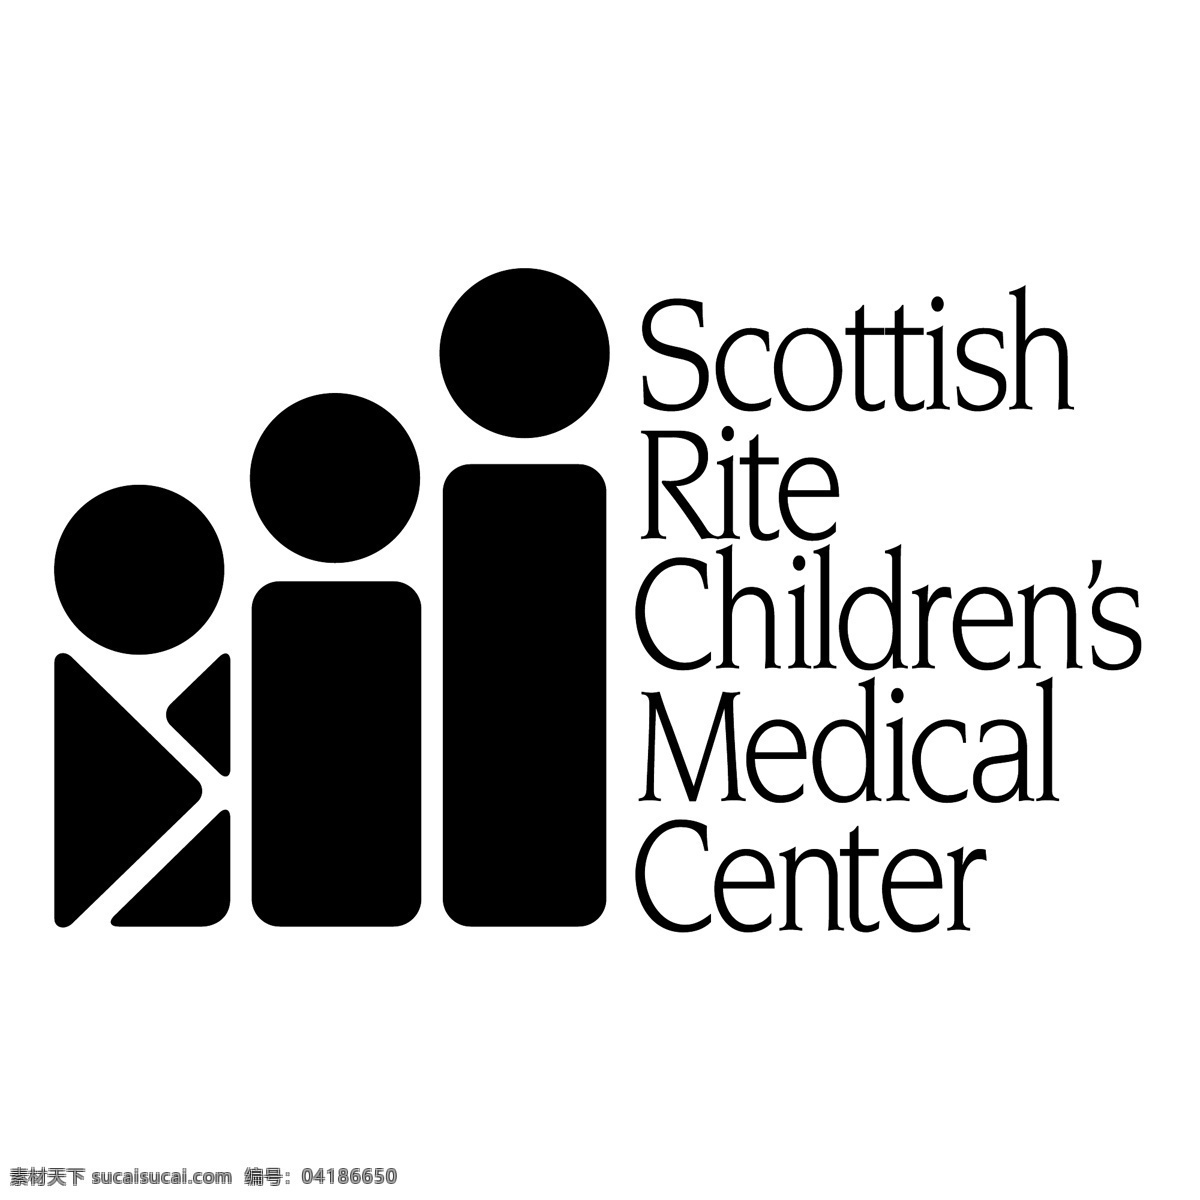 苏格兰 仪式 儿童医疗 中心 标识 公司 免费 品牌 品牌标识 商标 矢量标志下载 免费矢量标识 矢量 psd源文件 logo设计